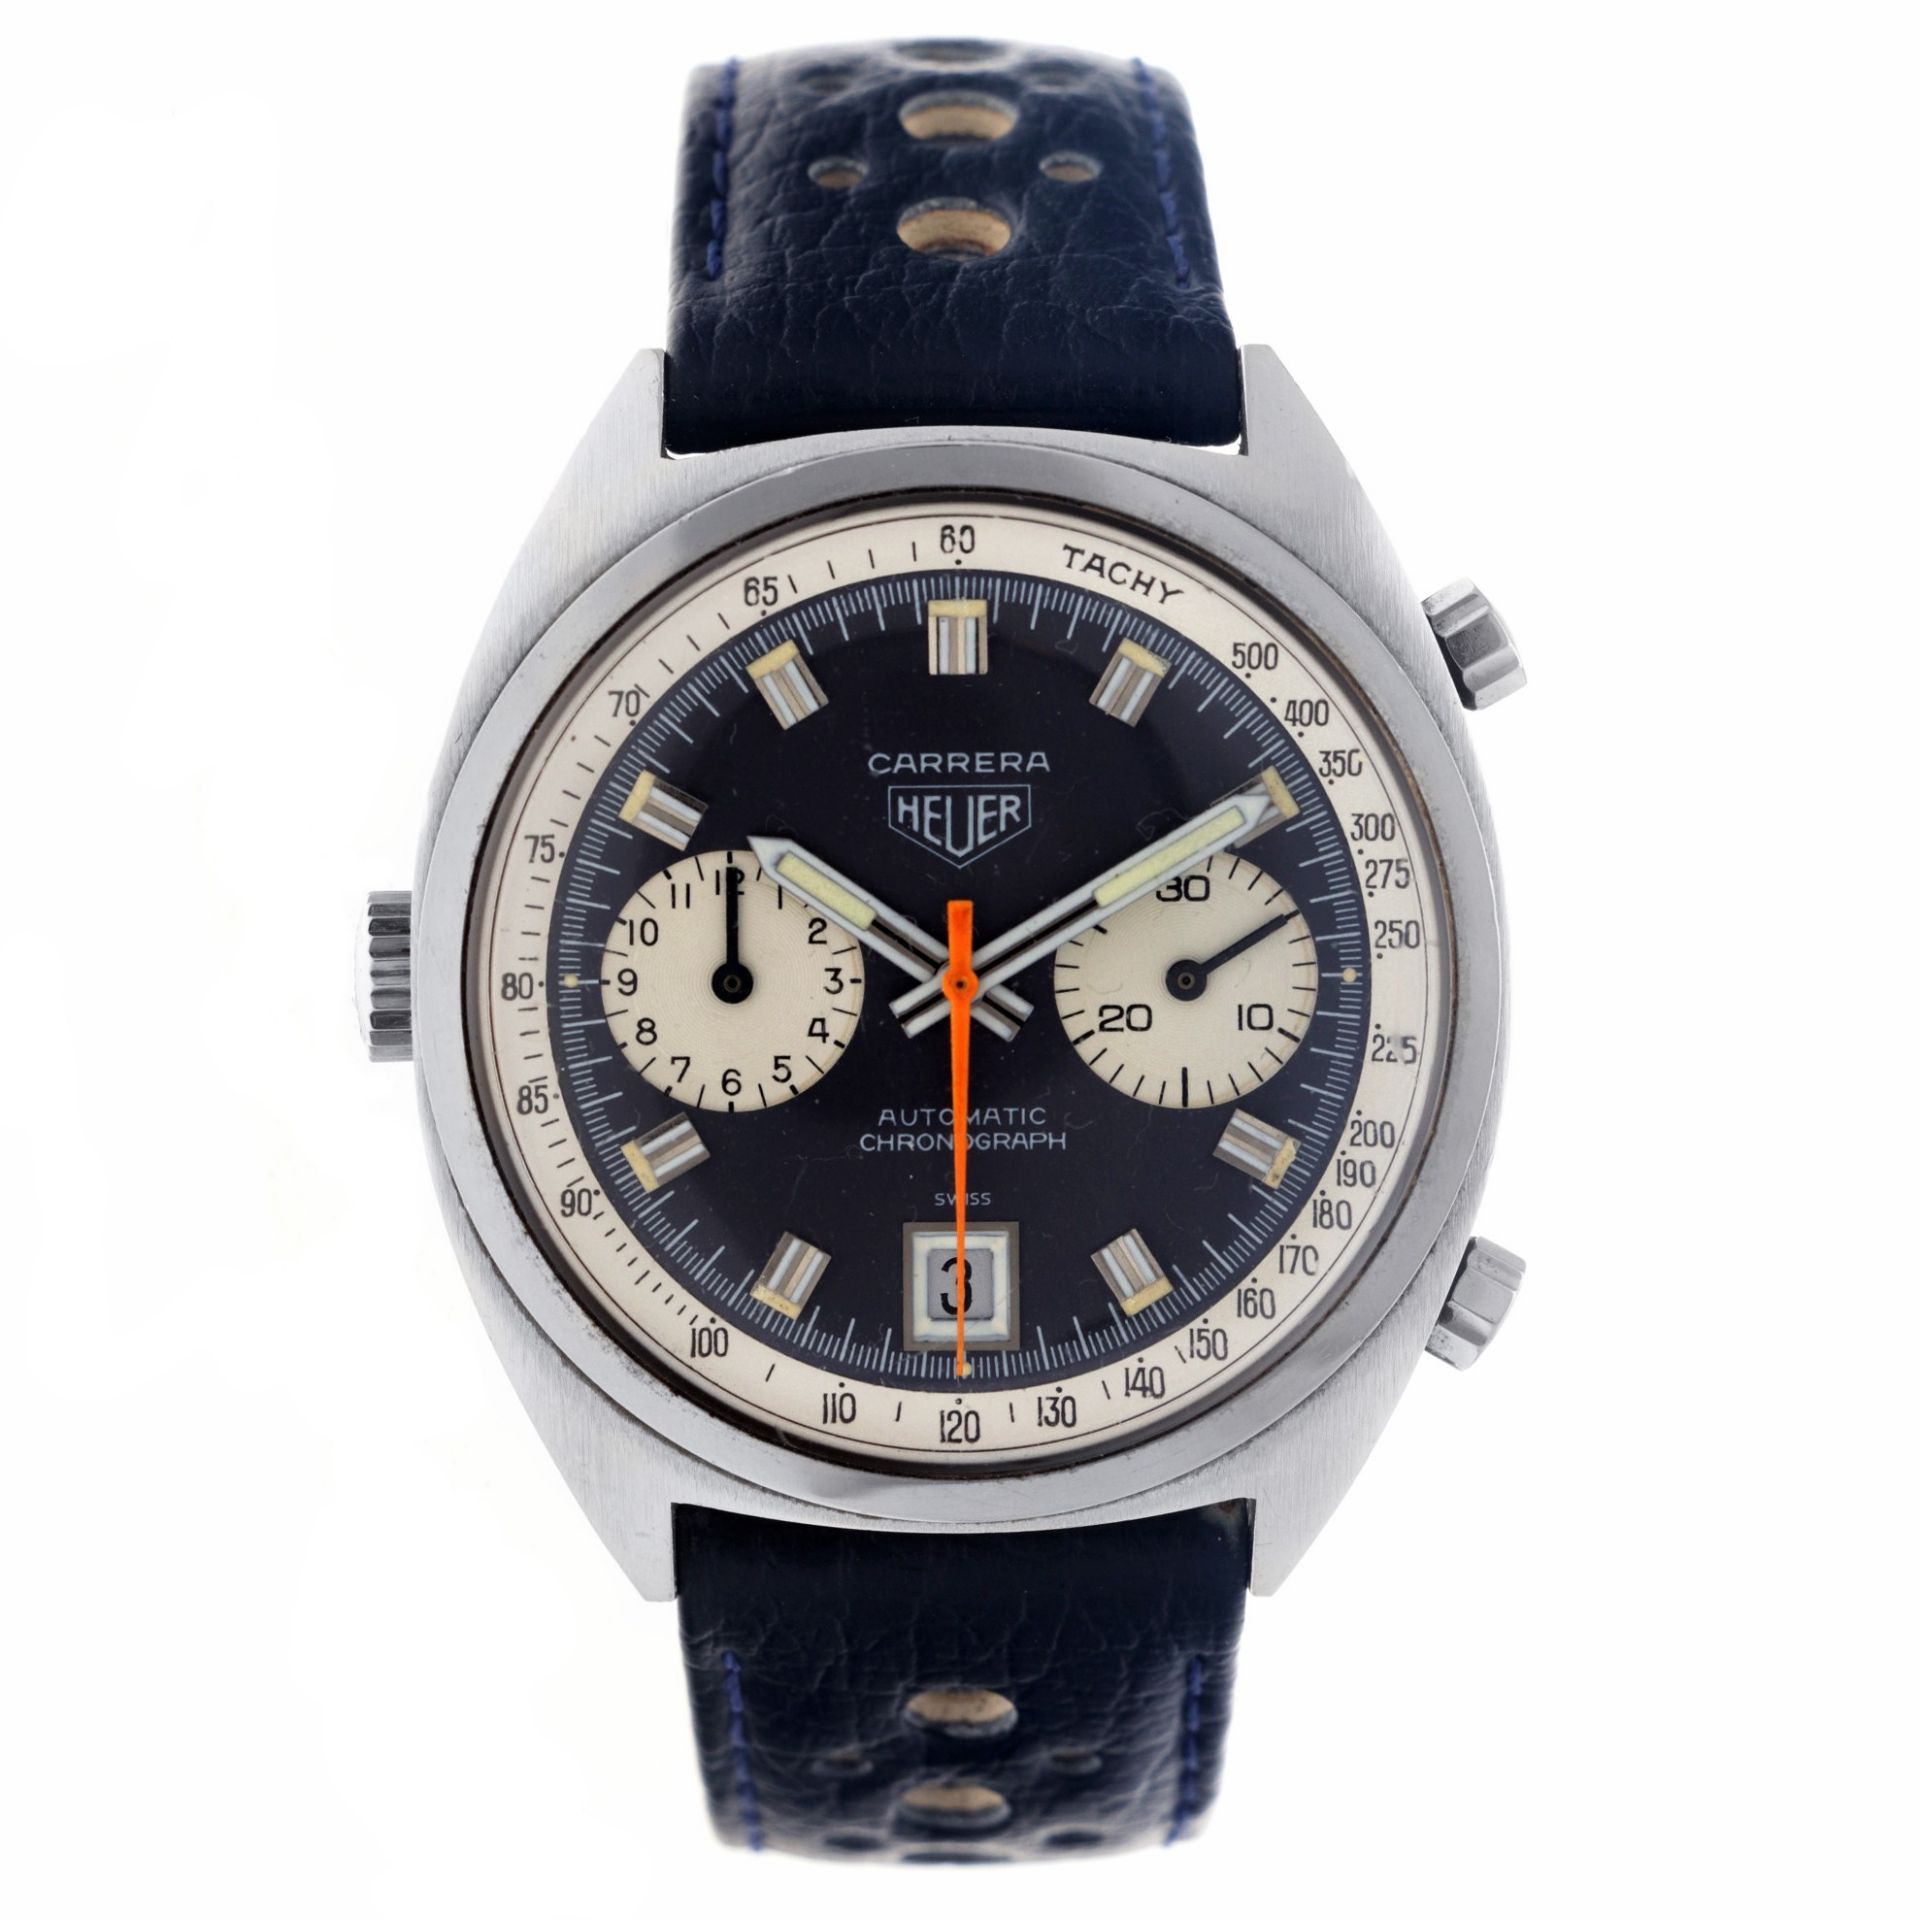 Heuer Carrera 1153 - Men's watch - approx. 1970.